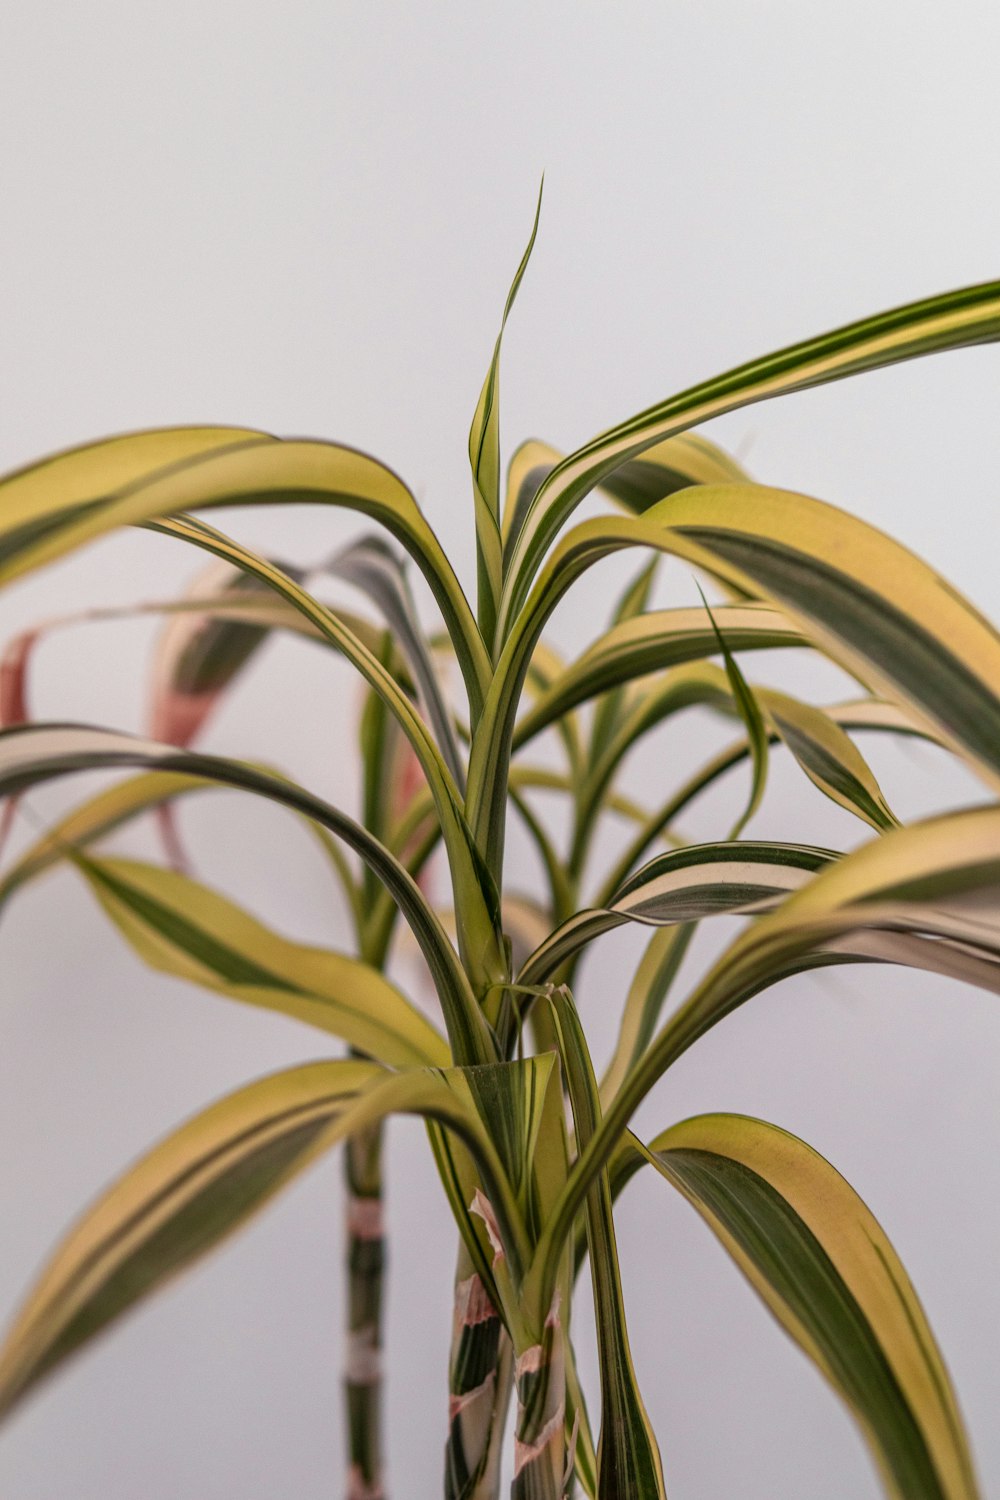 Un primo piano di una pianta con lunghe foglie verdi